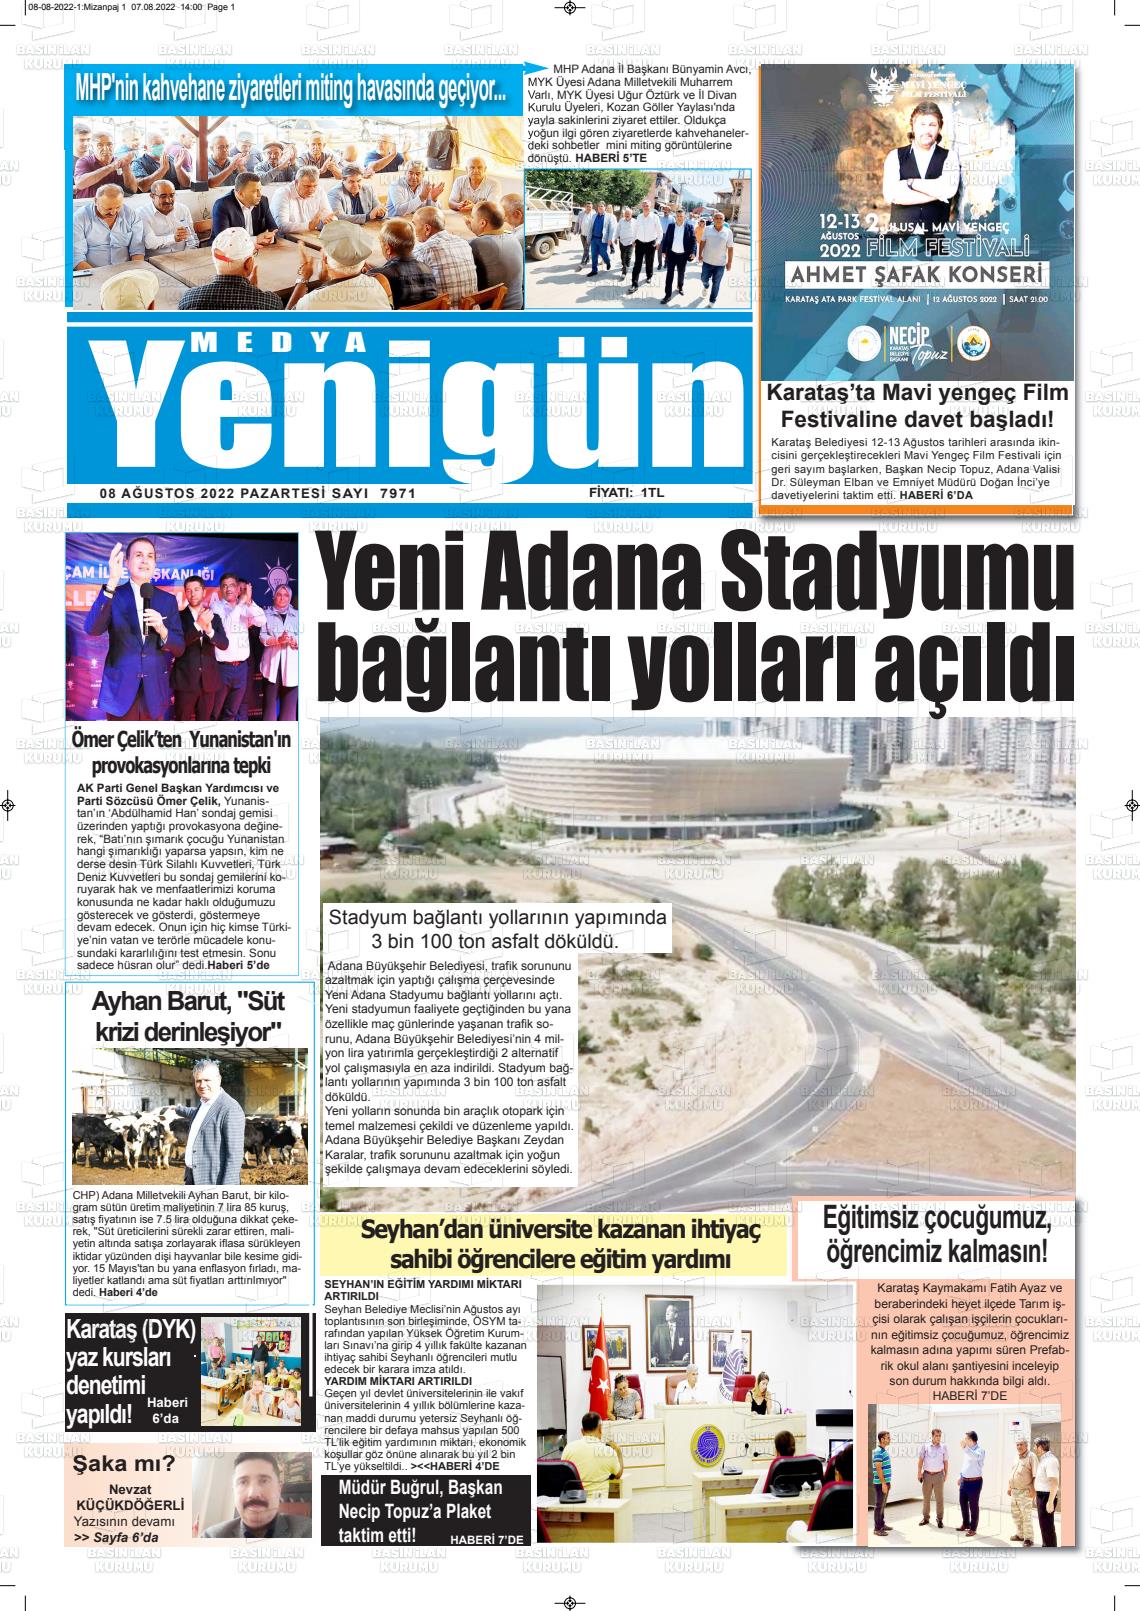 08 Ağustos 2022 Medya Yenigün Gazete Manşeti